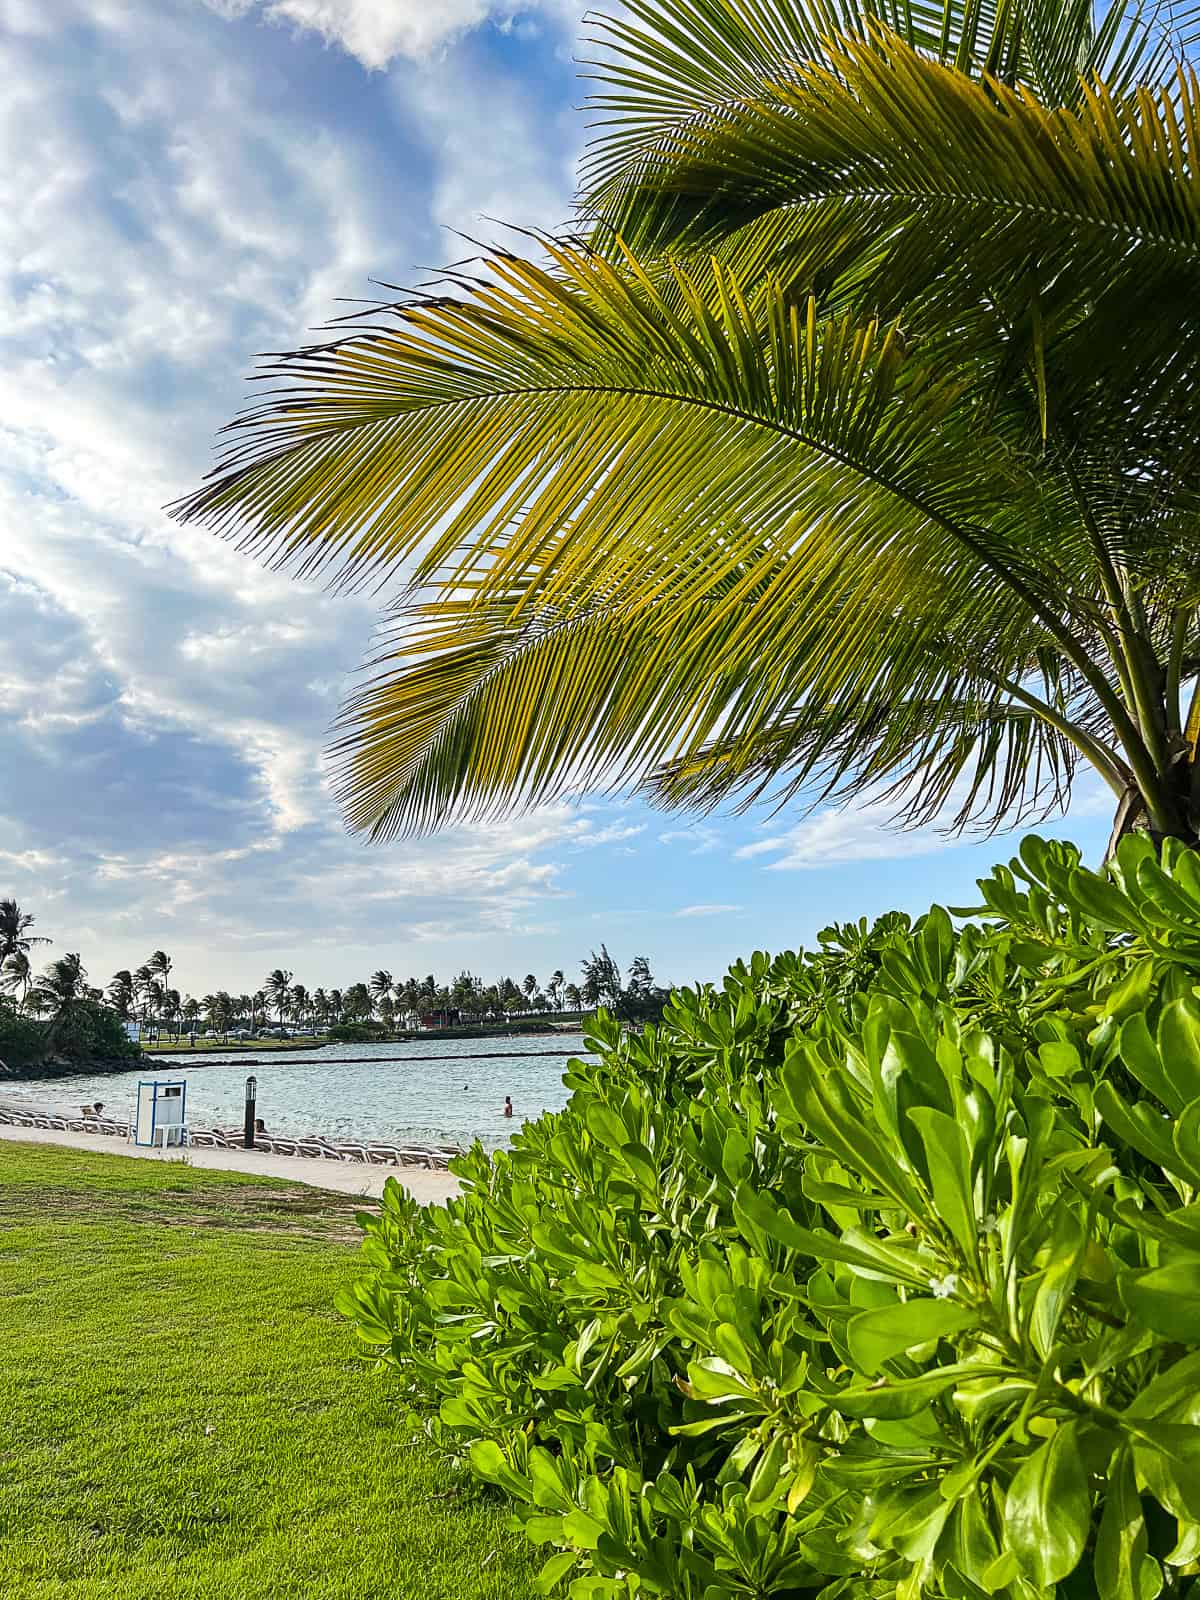 Puerto Rico Family Beach at Caribe Hilton Resort